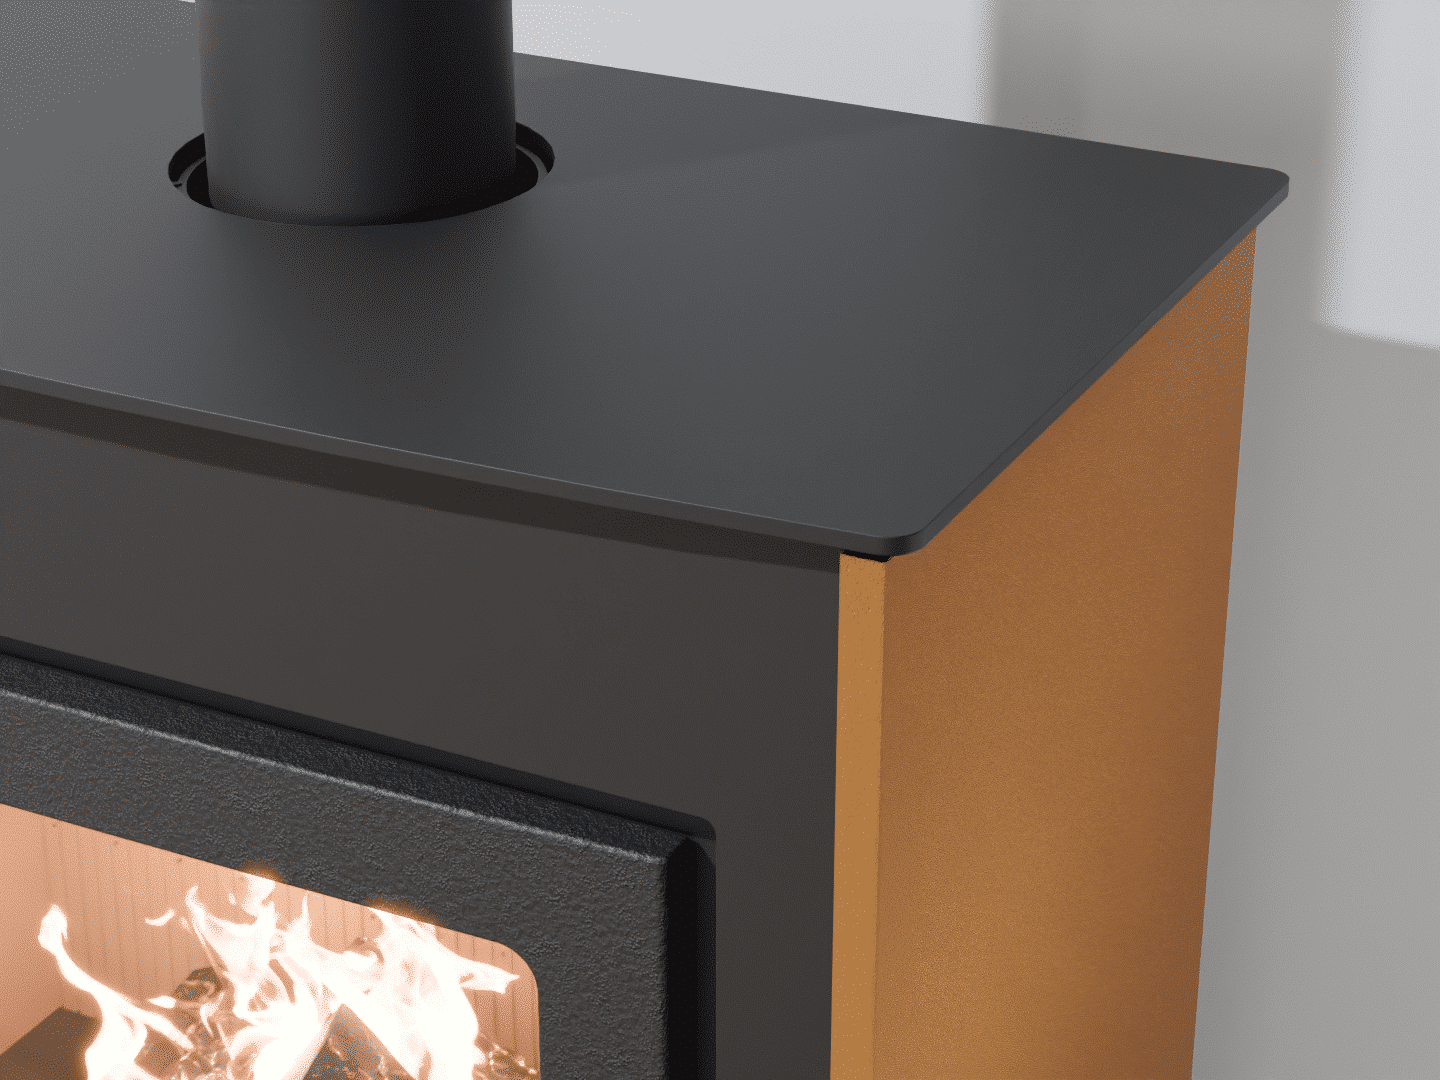 2101_Fireplace stove with heat exchanger_Yellow Orange_KamnaSchejbal_Kamna Schejbal_Kamnazvyroby_detail pravý bok